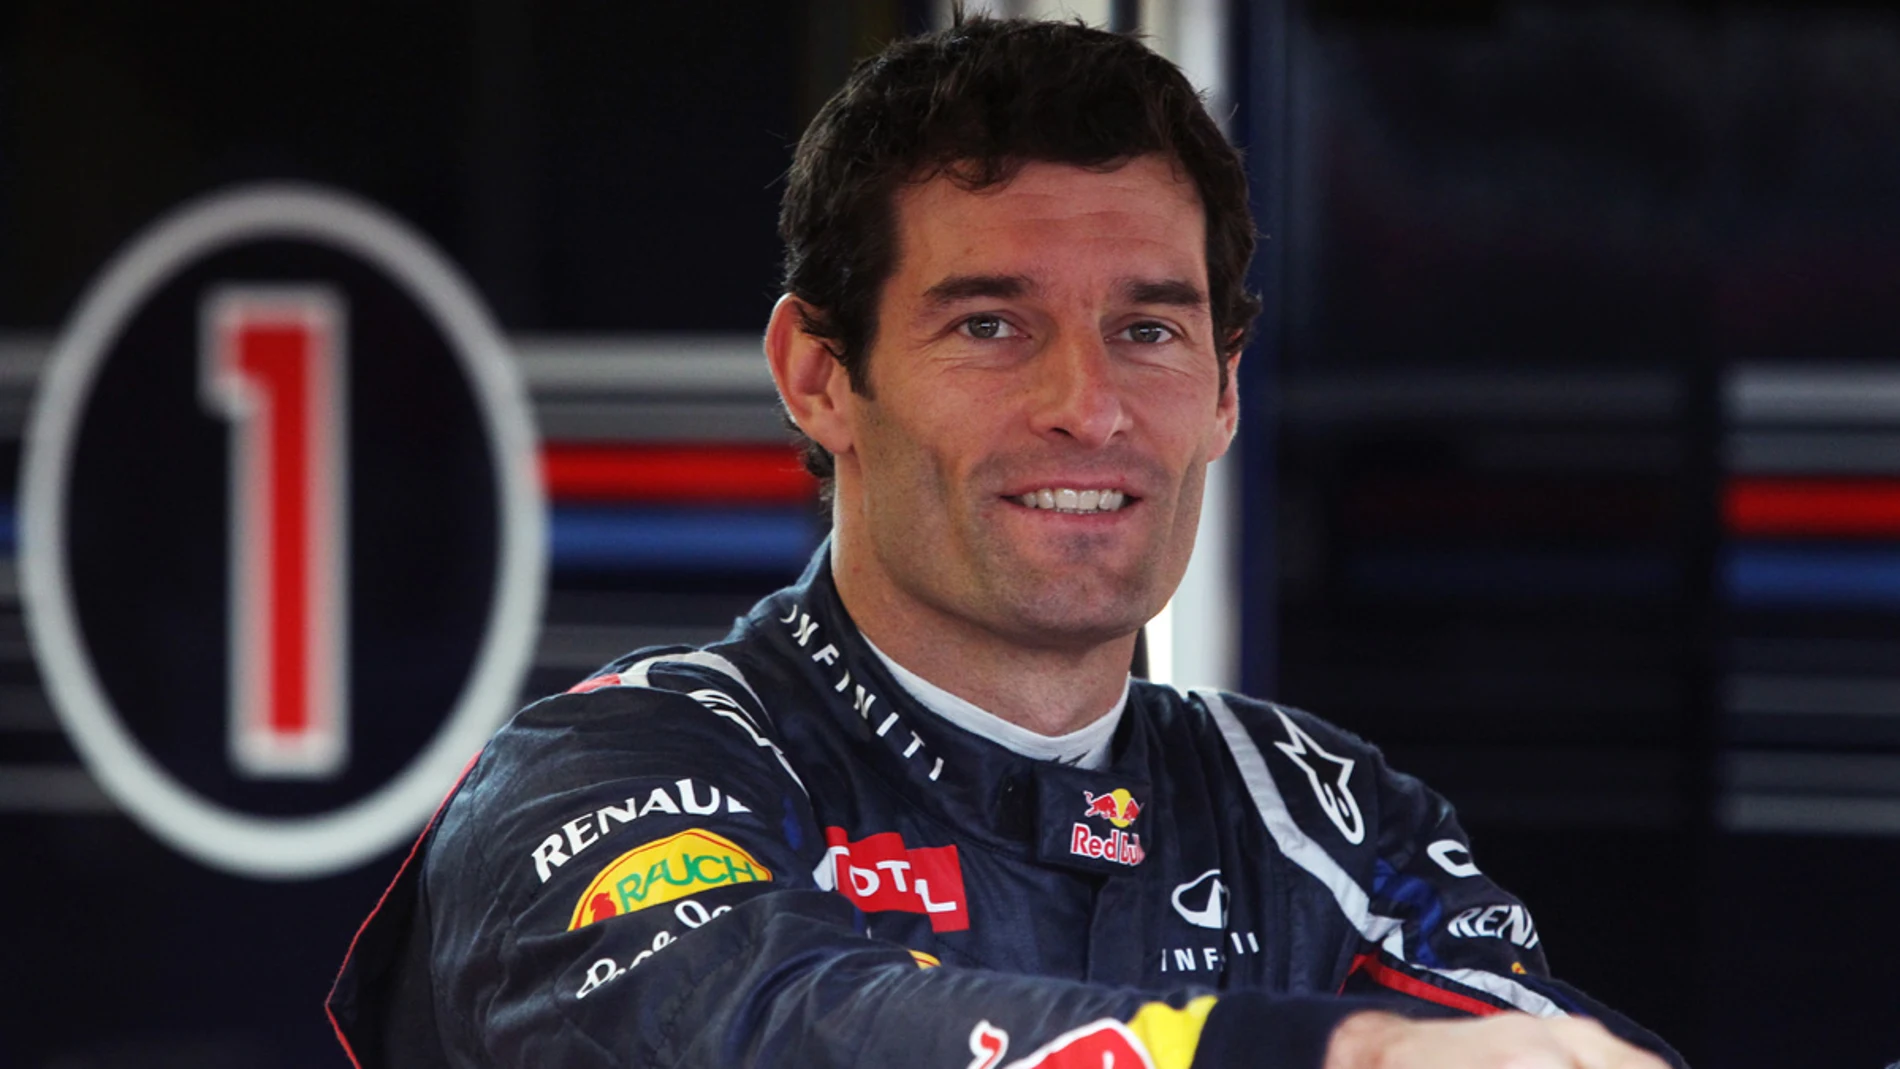 Mark Webber, en el box de Red Bull